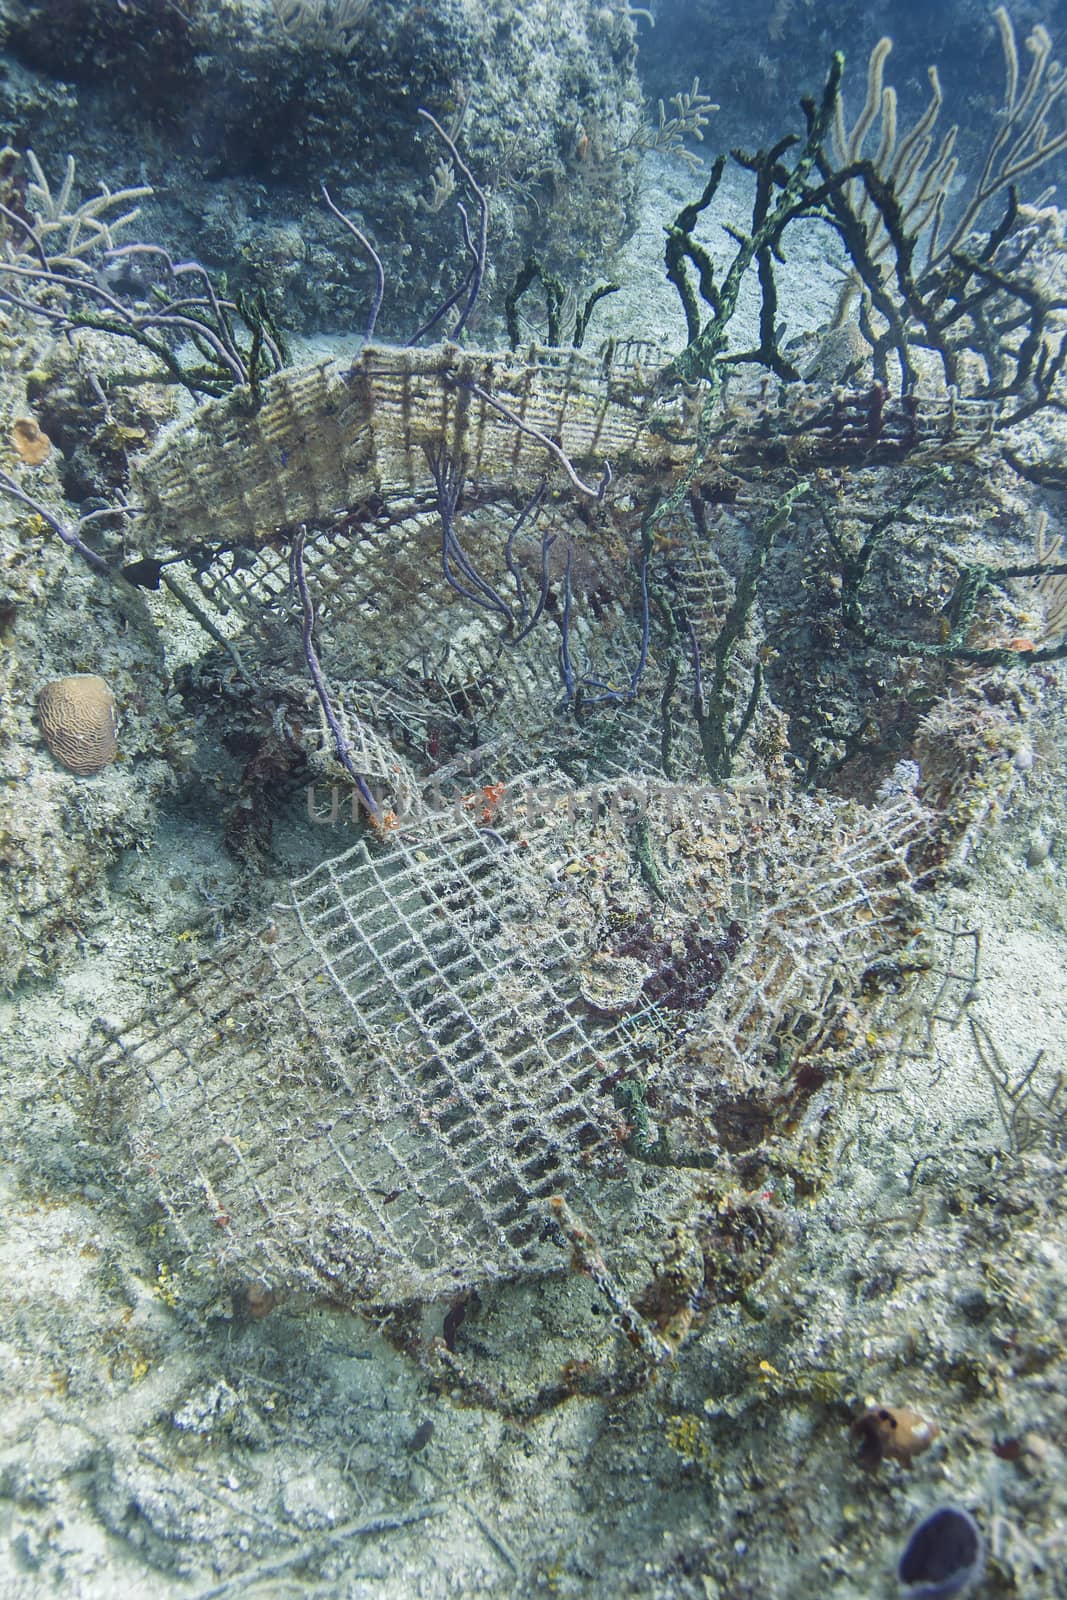 Underwater wreckage by mypstudio